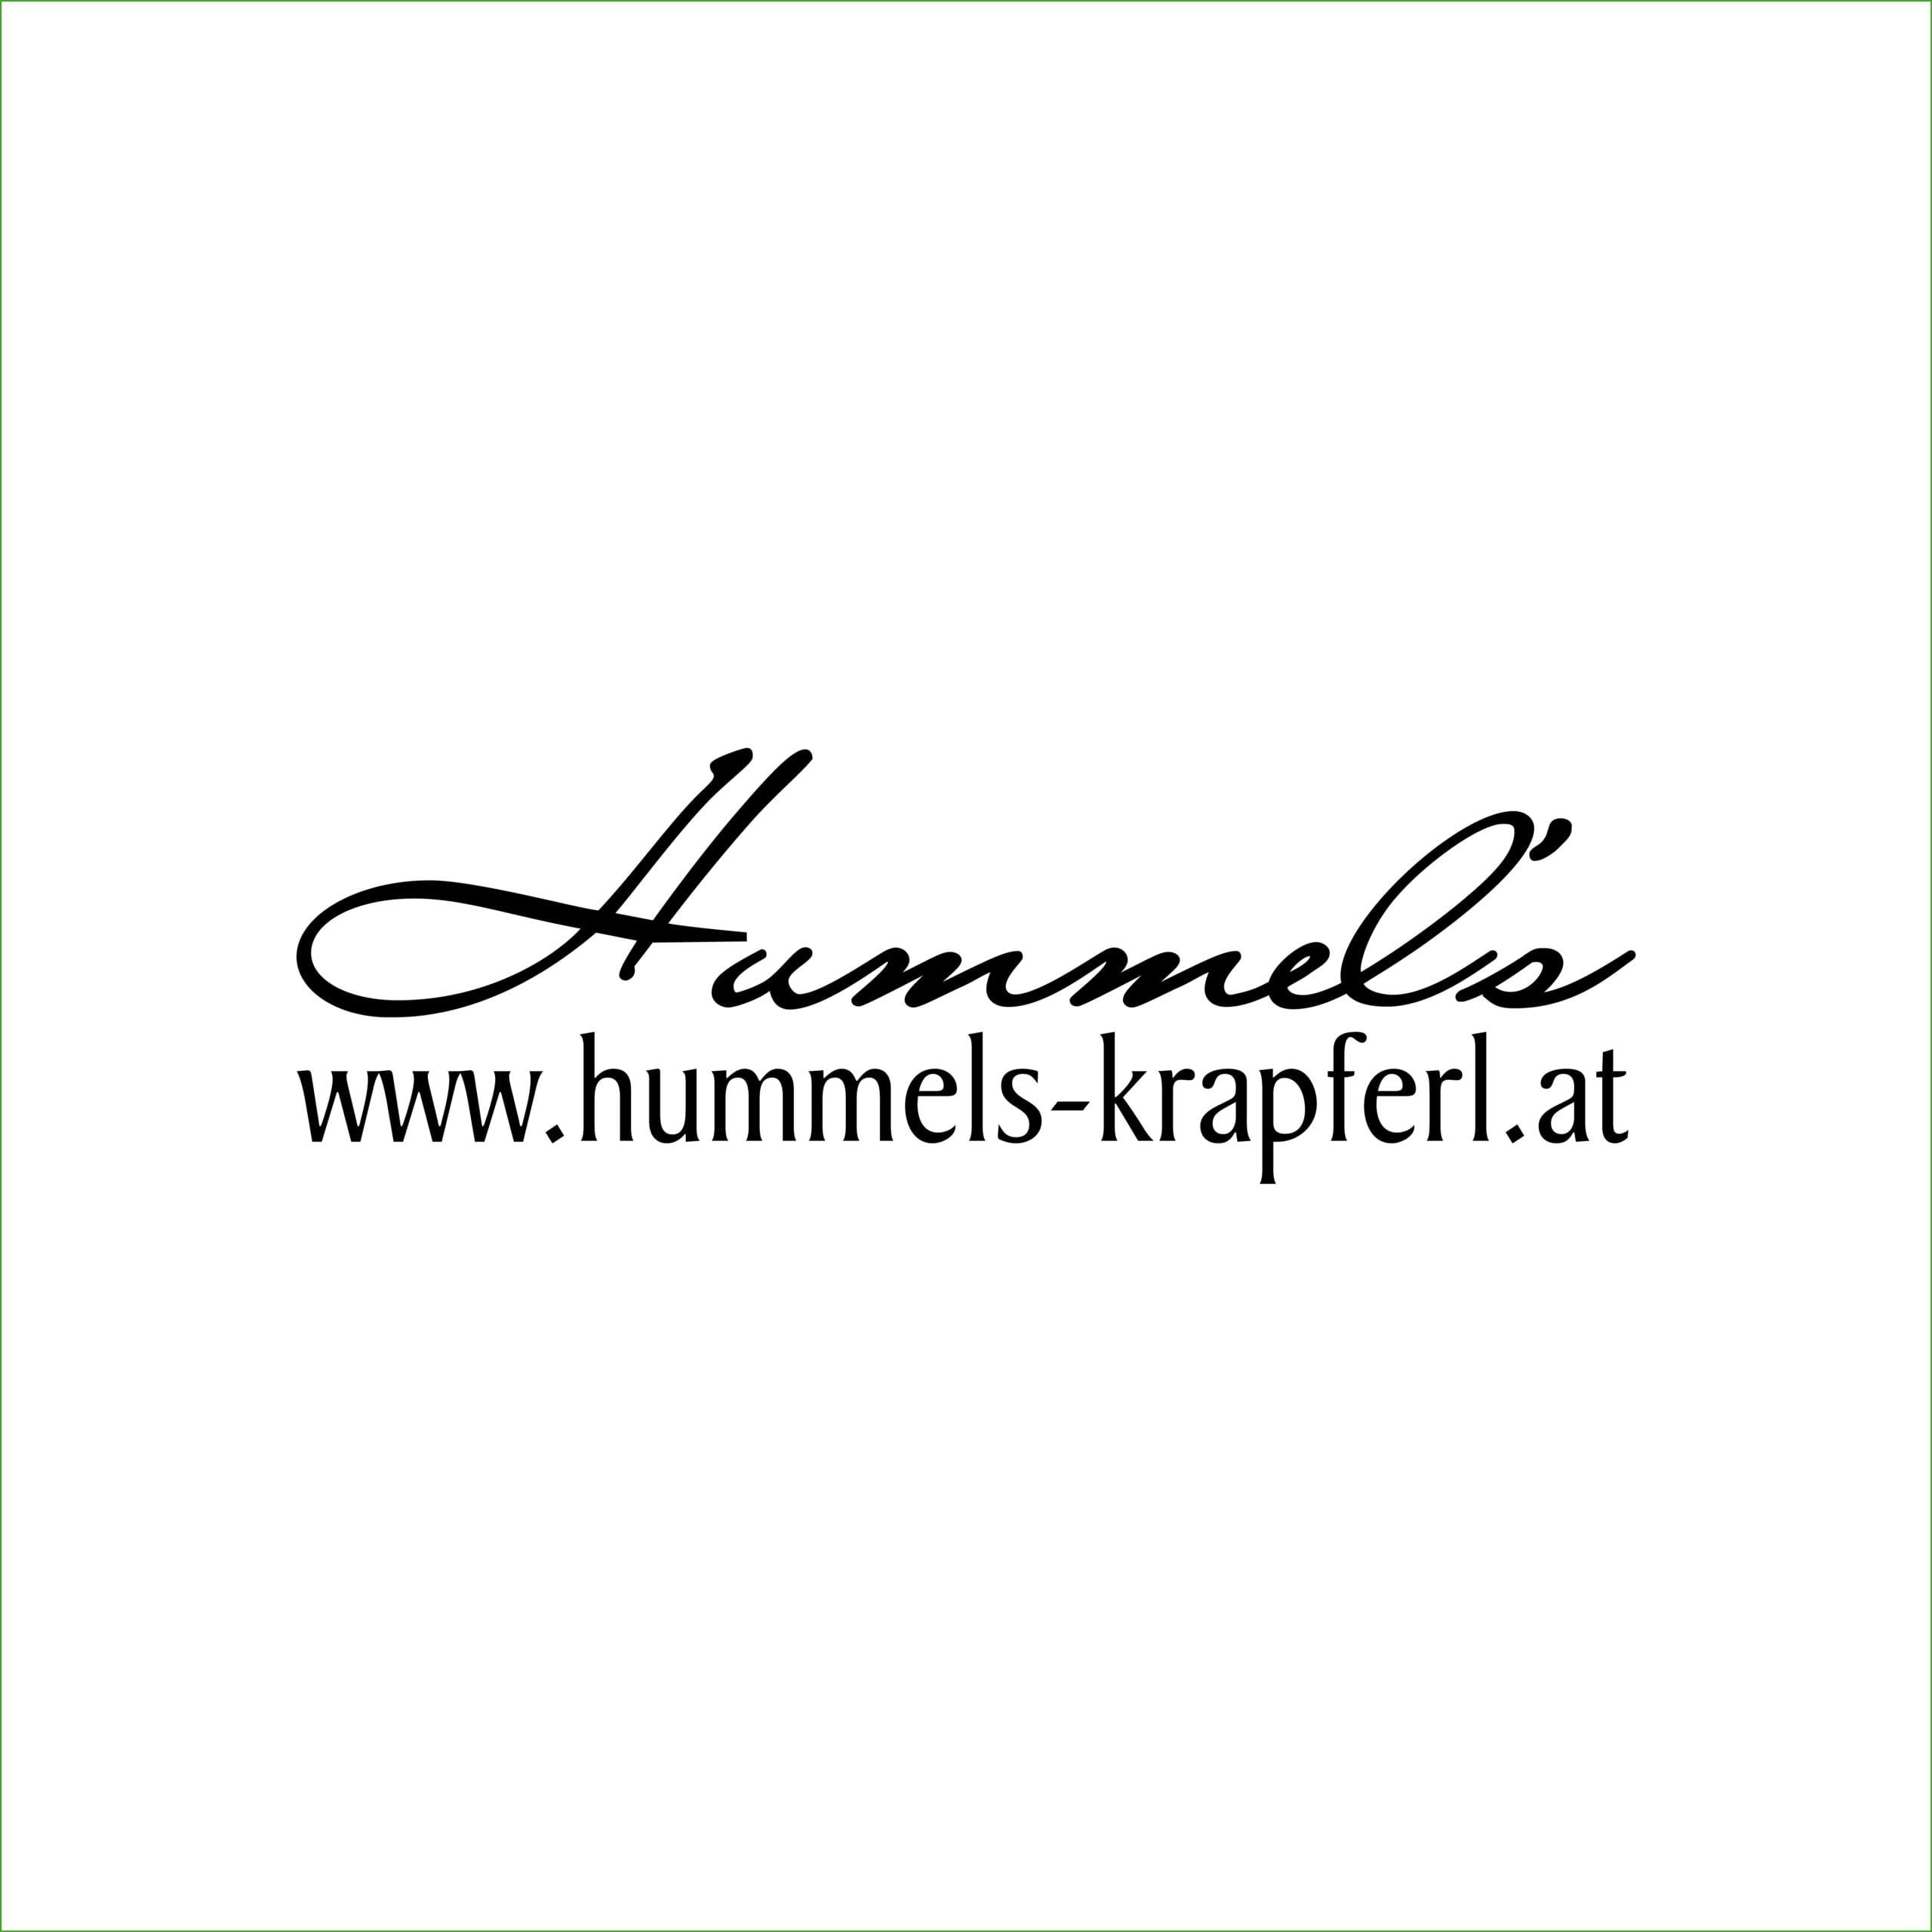 Hummel's Logo